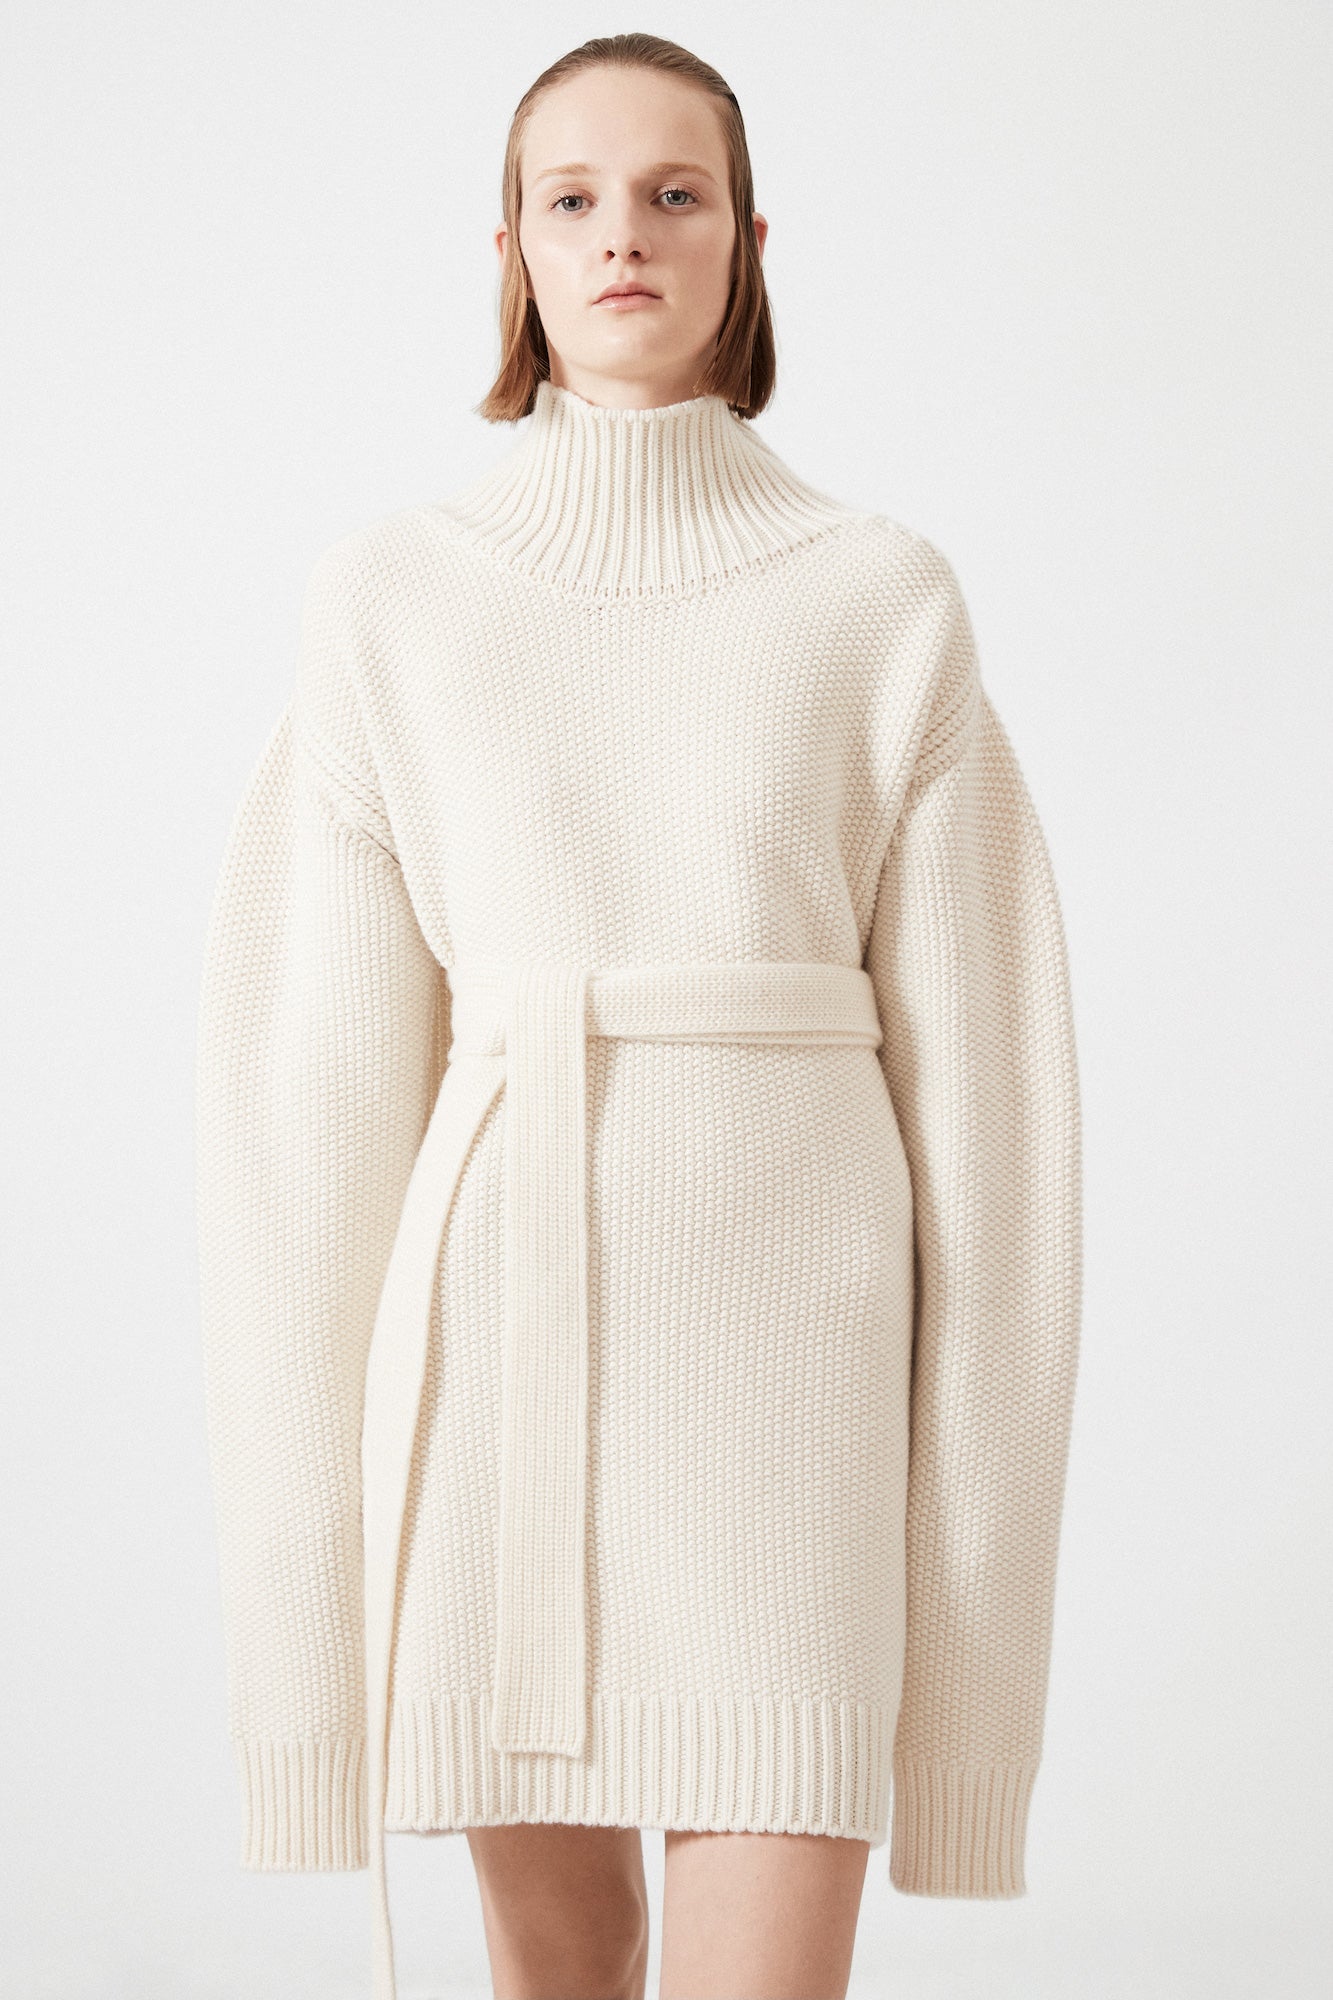 Belted turtleneck sweater dress